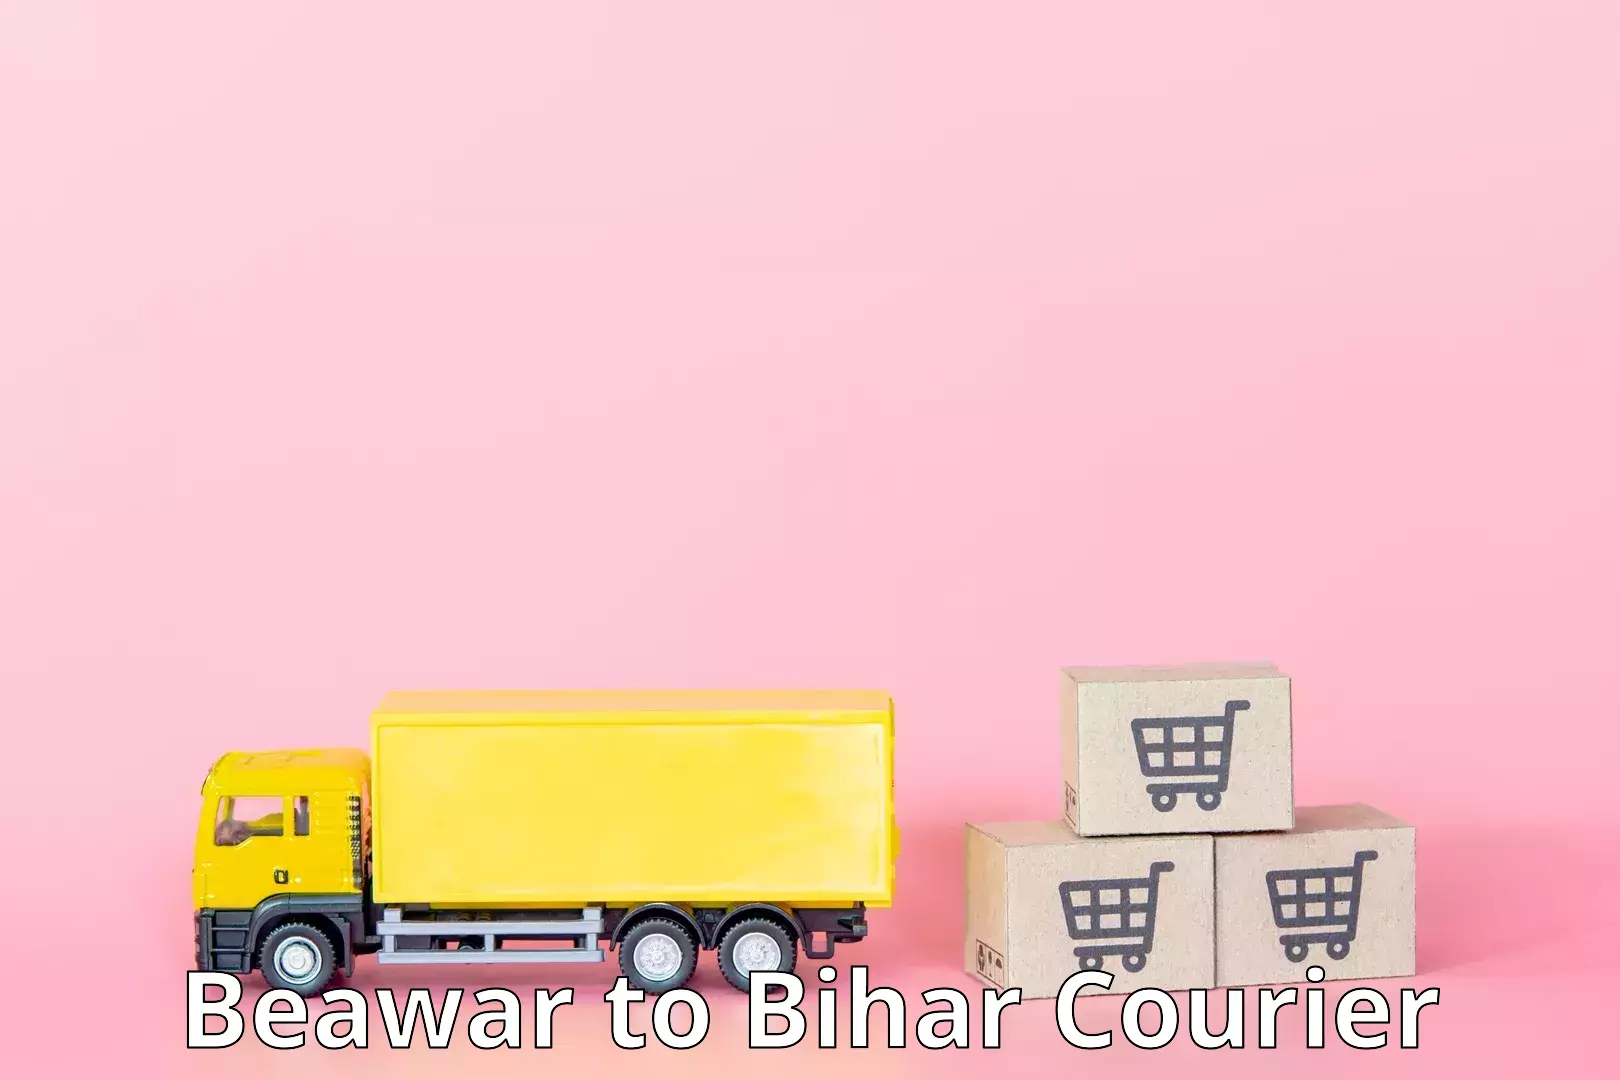 Express postal services Beawar to Bihar